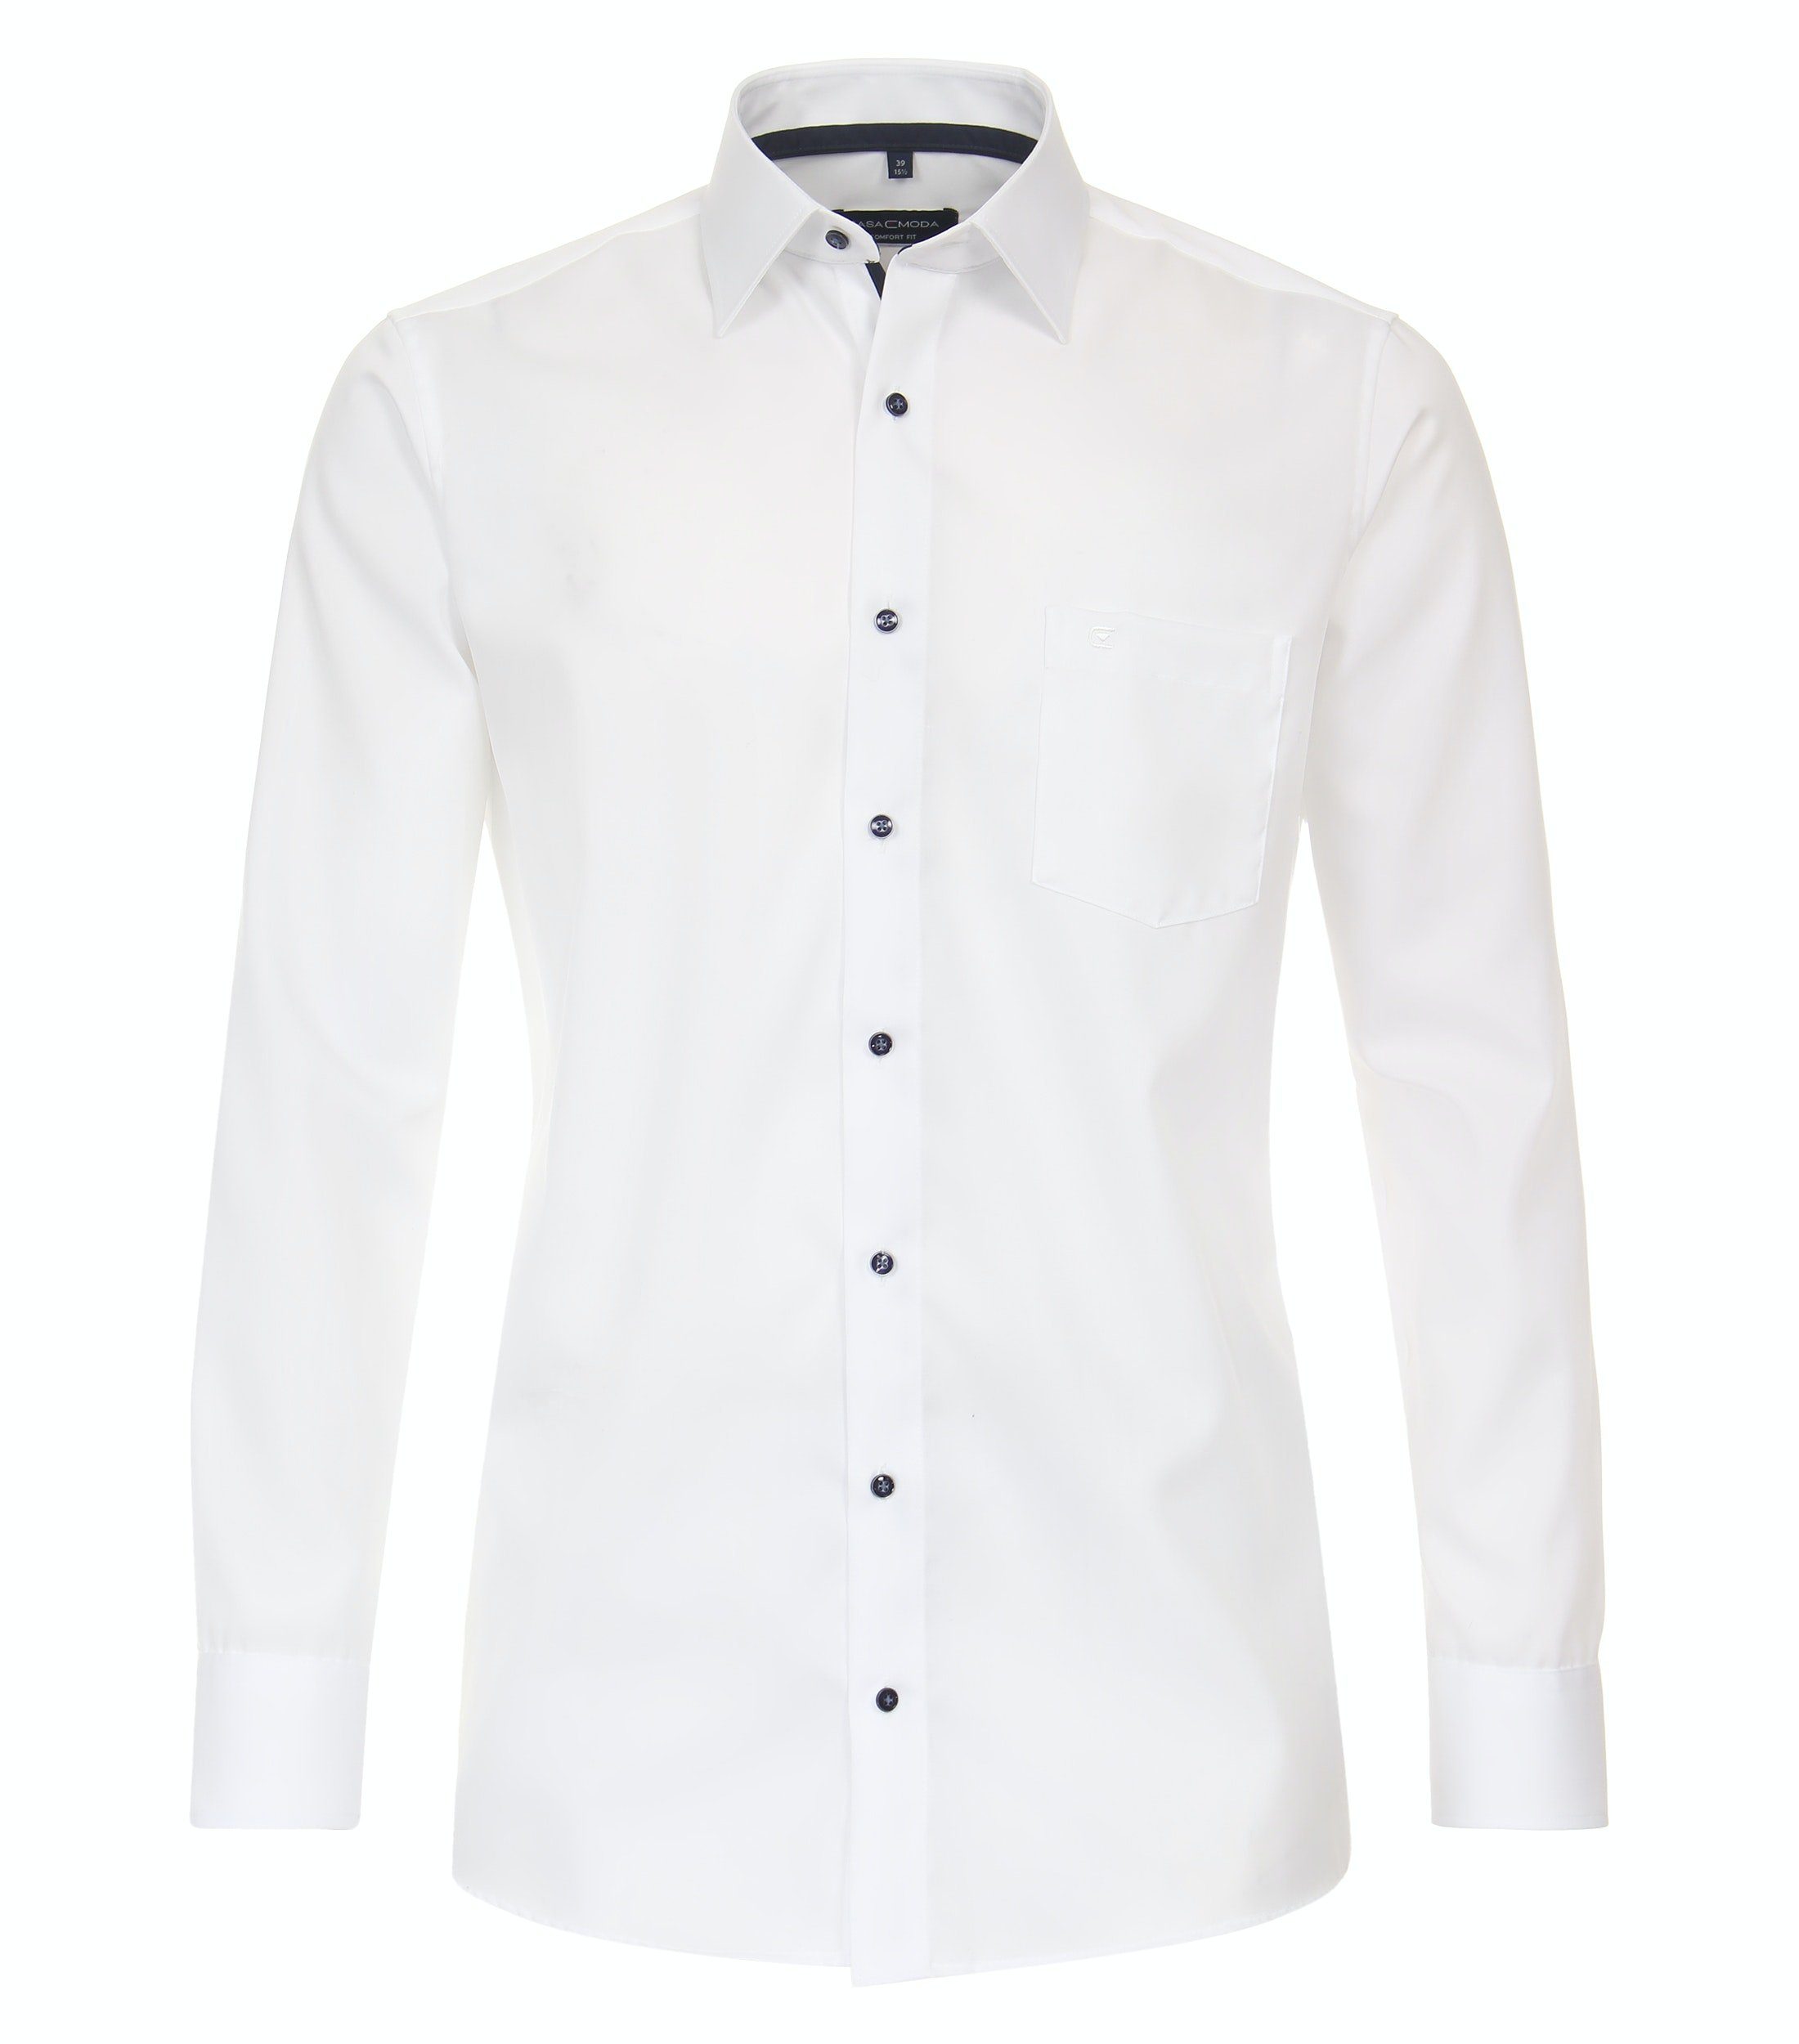 Weiß (000) - CASAMODA - - Langarm Businesshemd Weiß Comfort - Fit Einfarbig Businesshemd